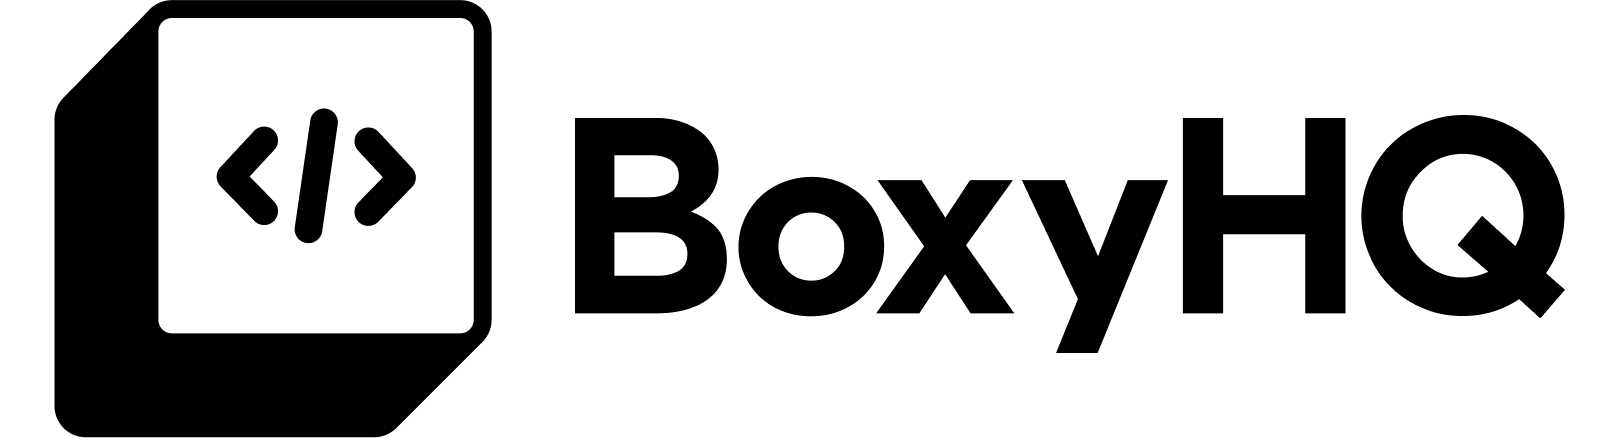 BoxyHQ Full logo-2